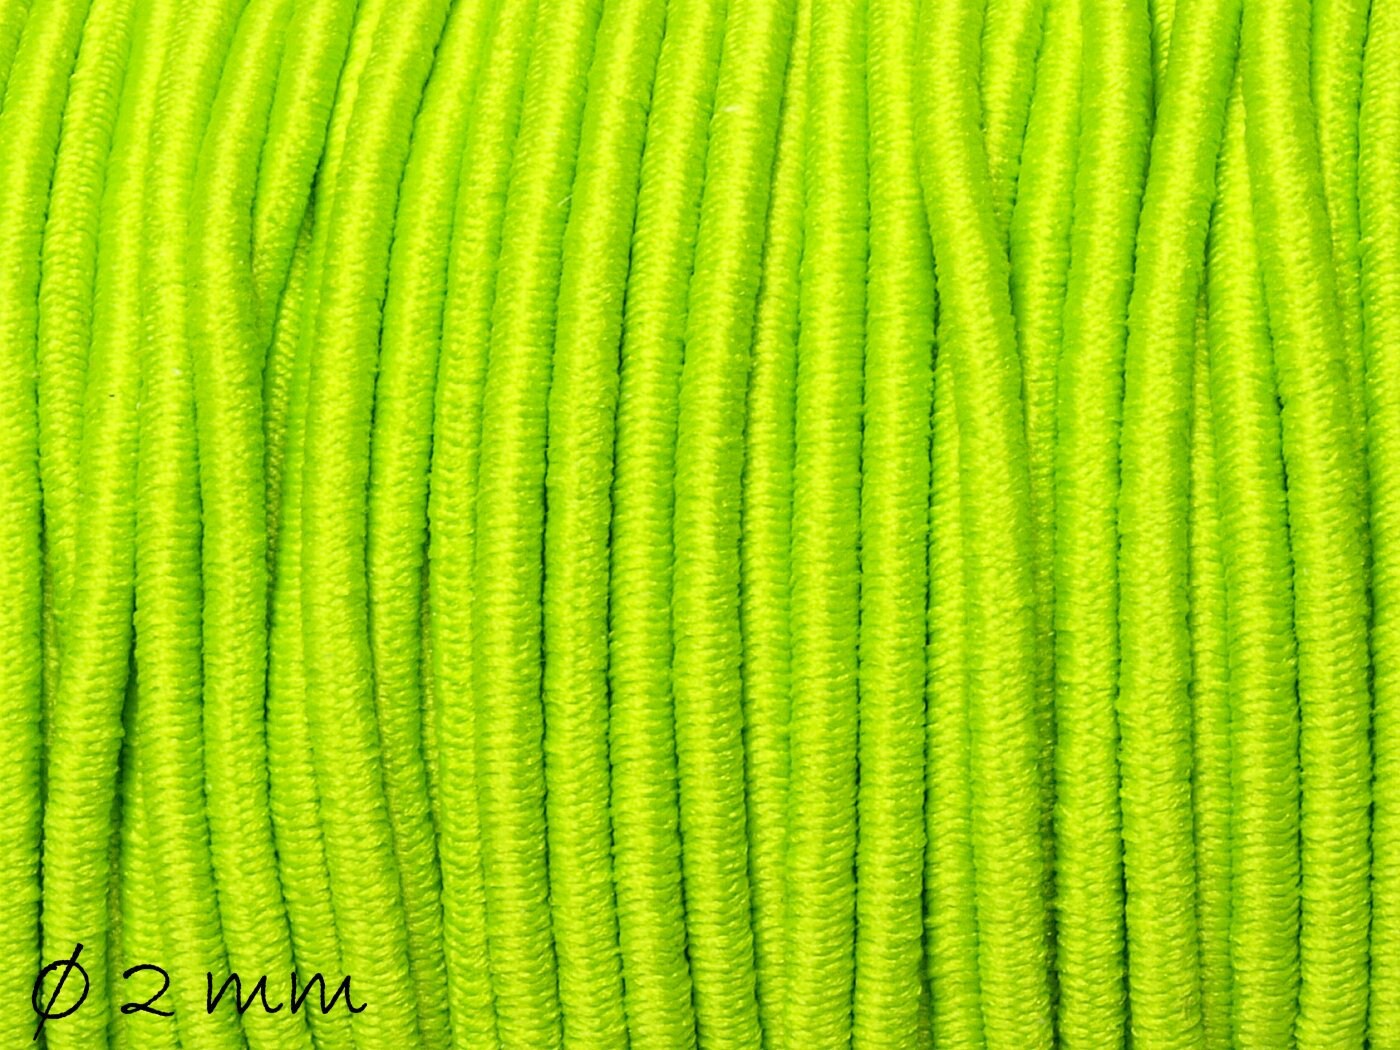 0,36EUR/m - 5 m Elastische Nylon-Schnur Ø 2 mm, grün